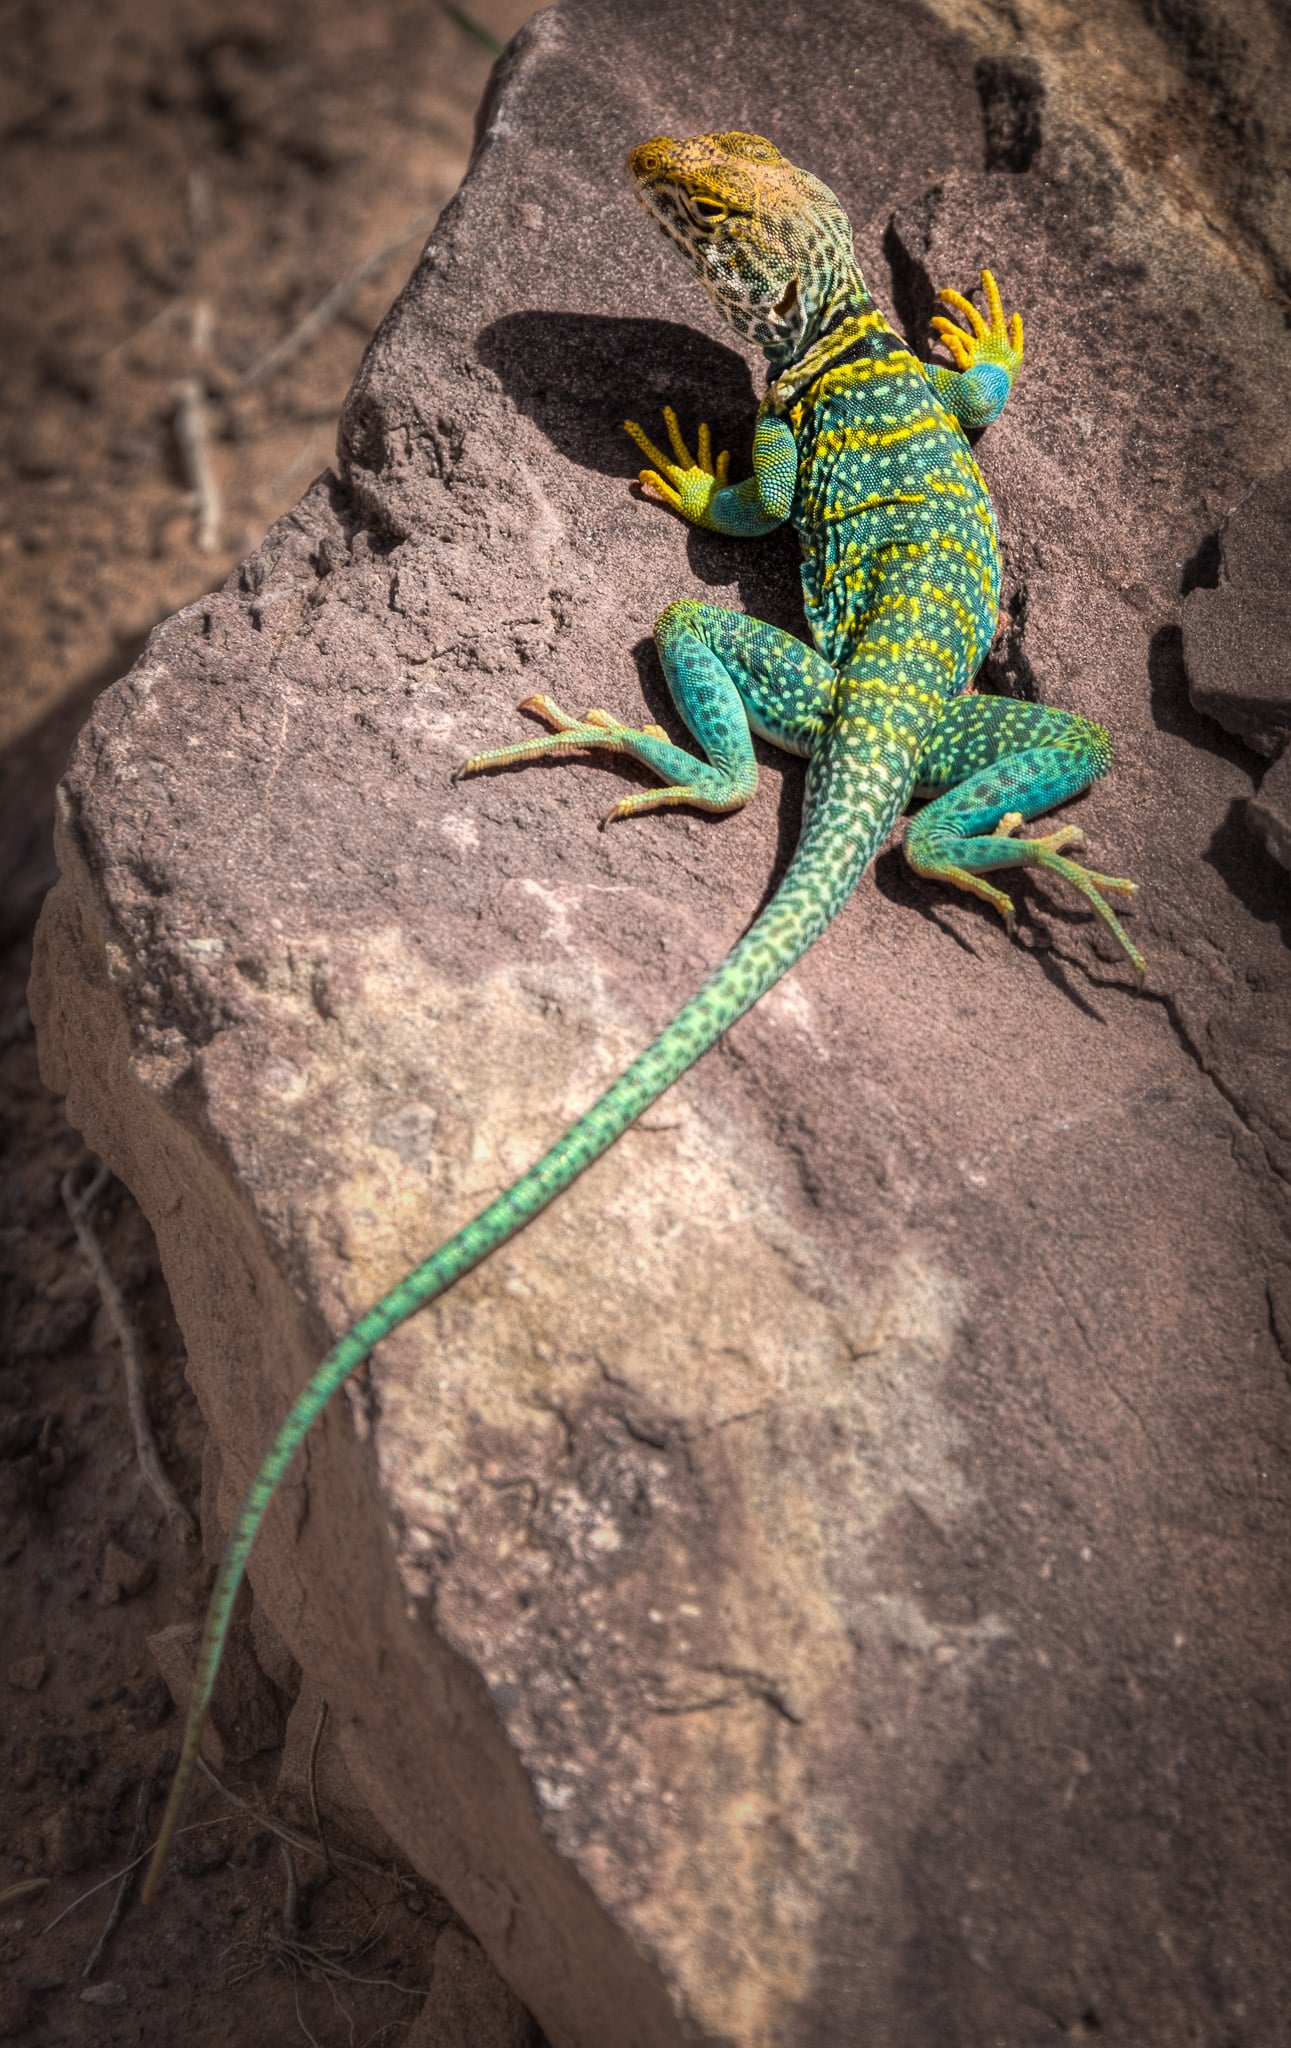 A common collared lizard (Crotaphytus collaris) enjoys the mid-day sun in Devils Canyon near Fruita, Colorado.